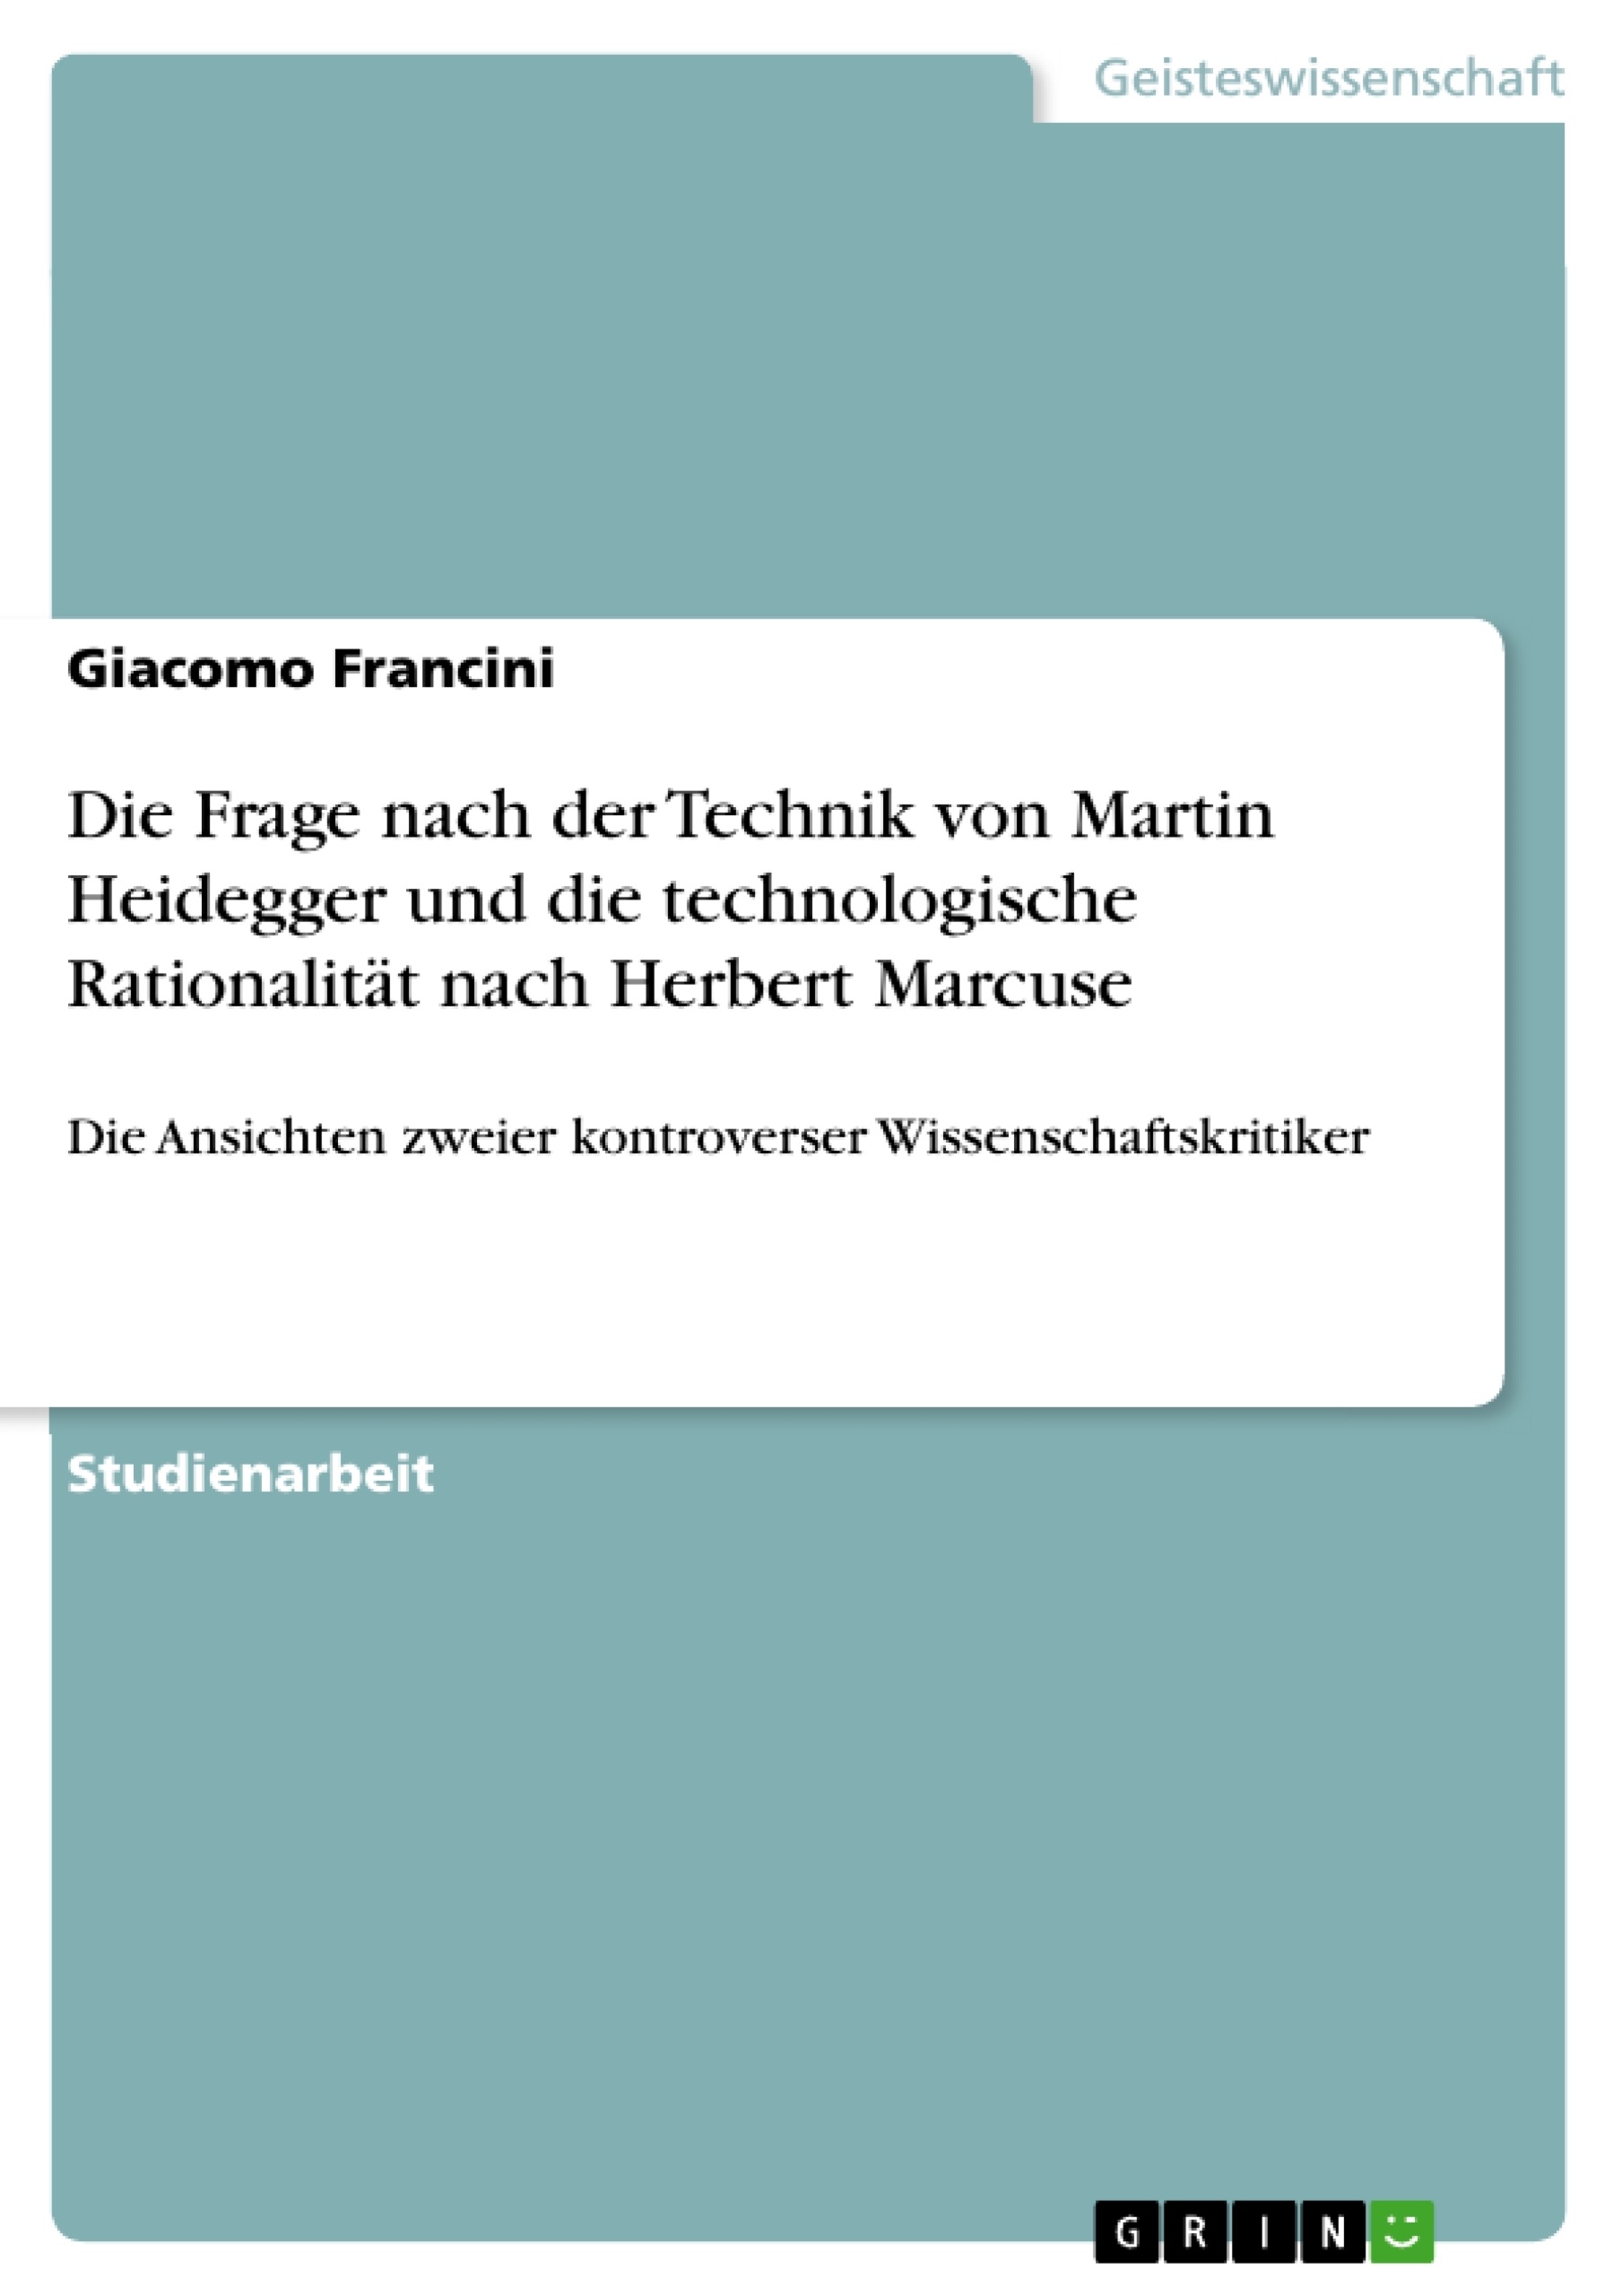 Titre: Die Frage nach der Technik von Martin Heidegger und die technologische Rationalität nach Herbert Marcuse